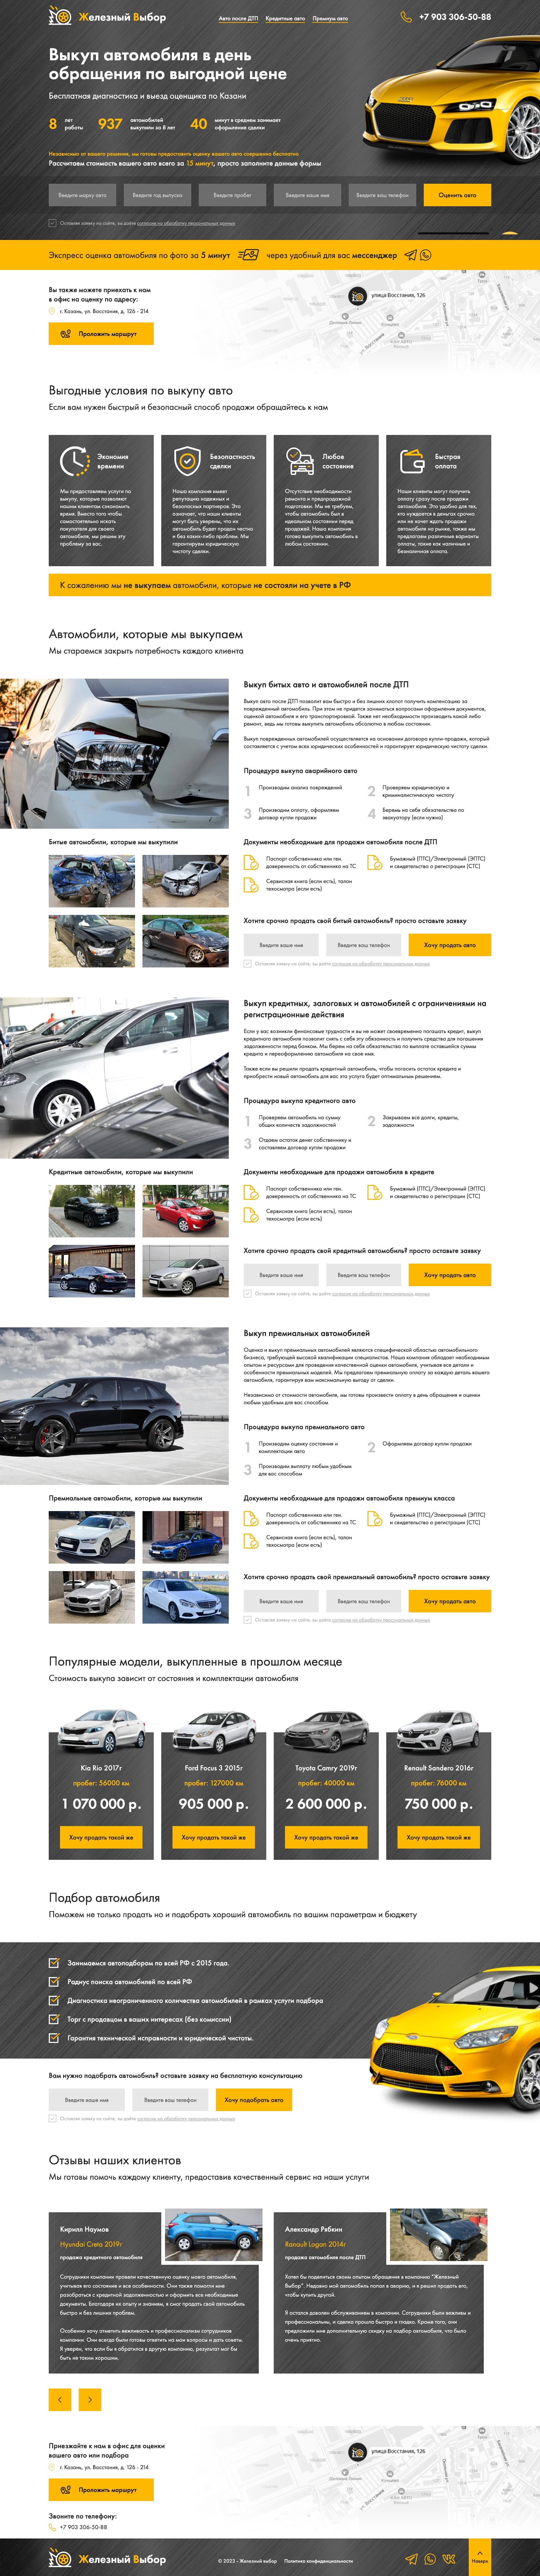 Пример продающей посадочной страницы сайта выкупа автомобилей